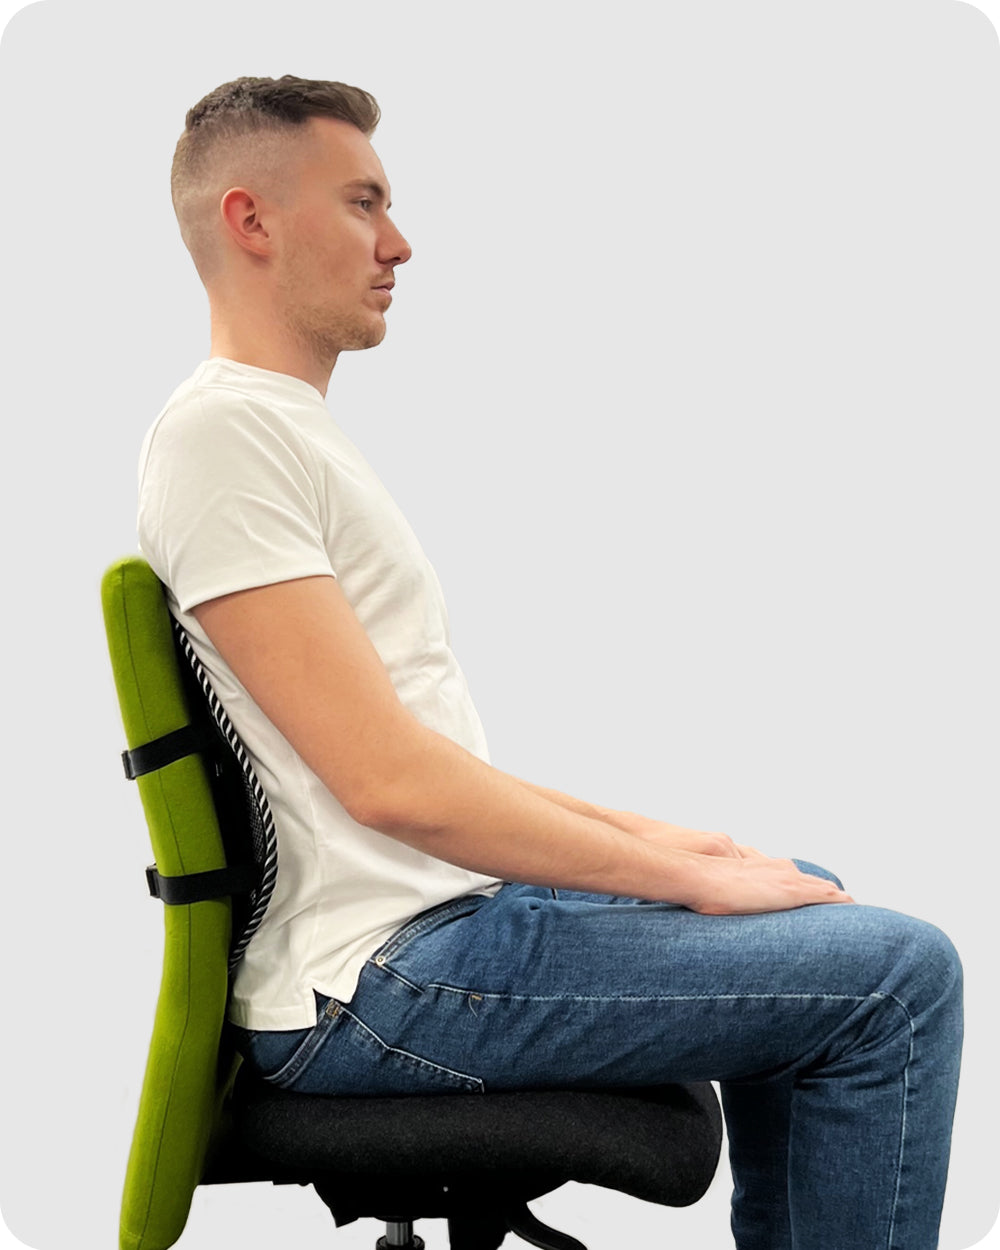 soporte lumbar para sillas de oficina